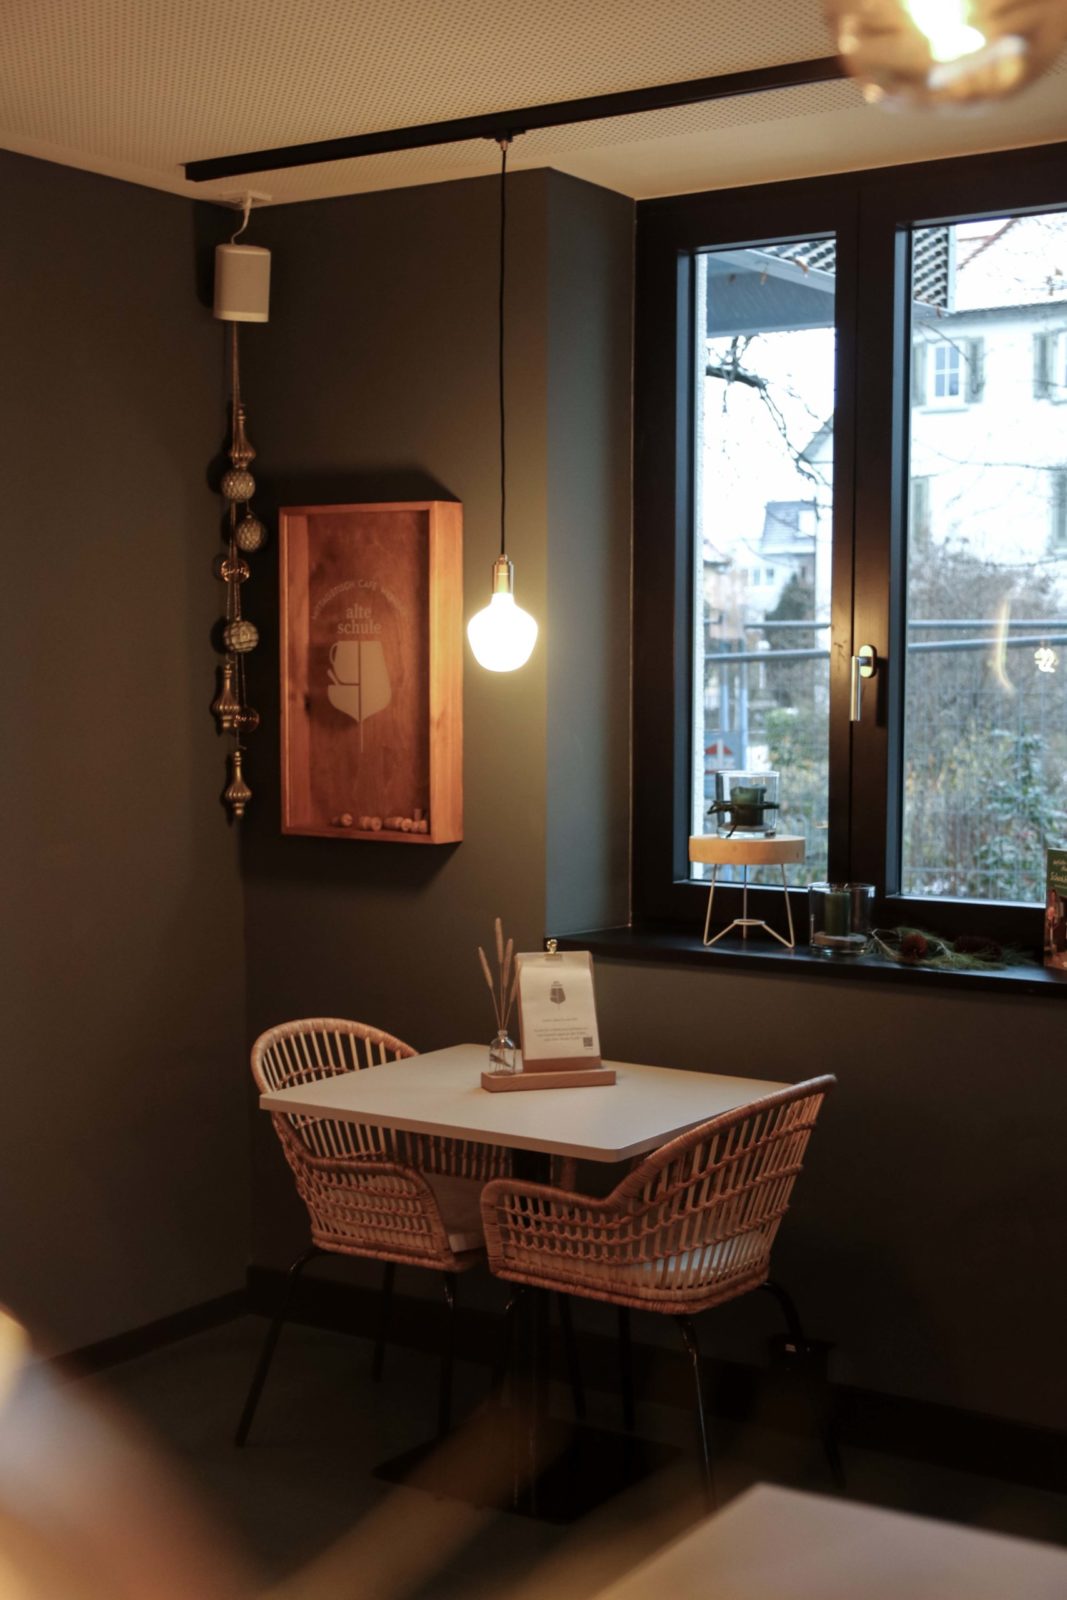 Innengestaltung Cafe, Bambussessel und Tisch an Fenster, warme Beleuchtung, weihnachtlich dekoriert